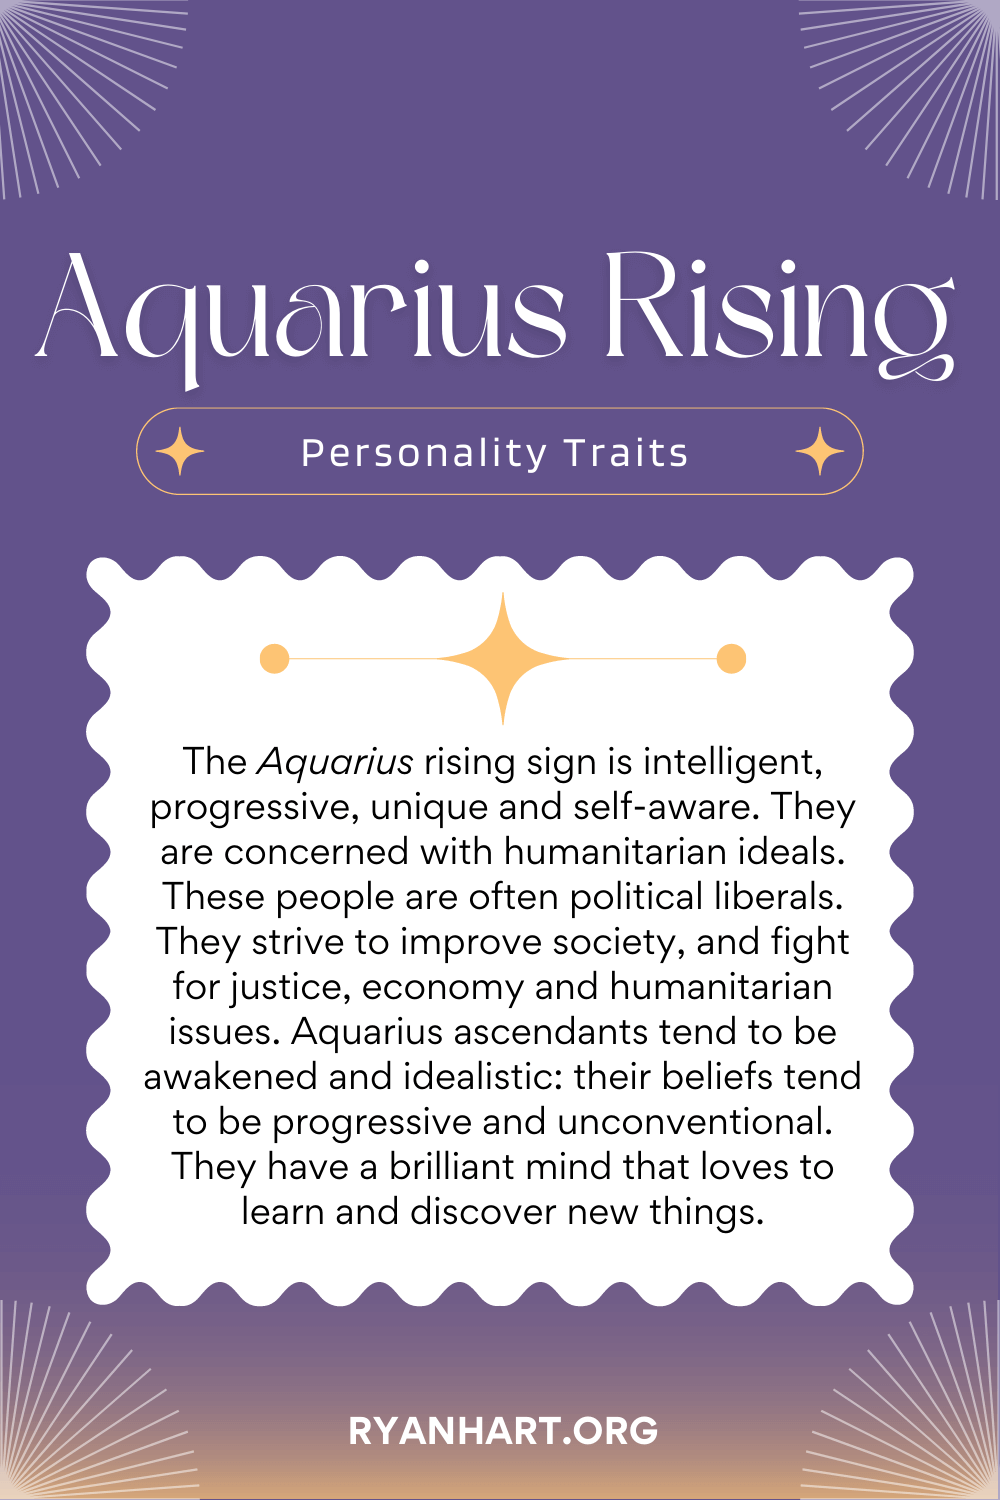 Aquarius Rising Sign Description